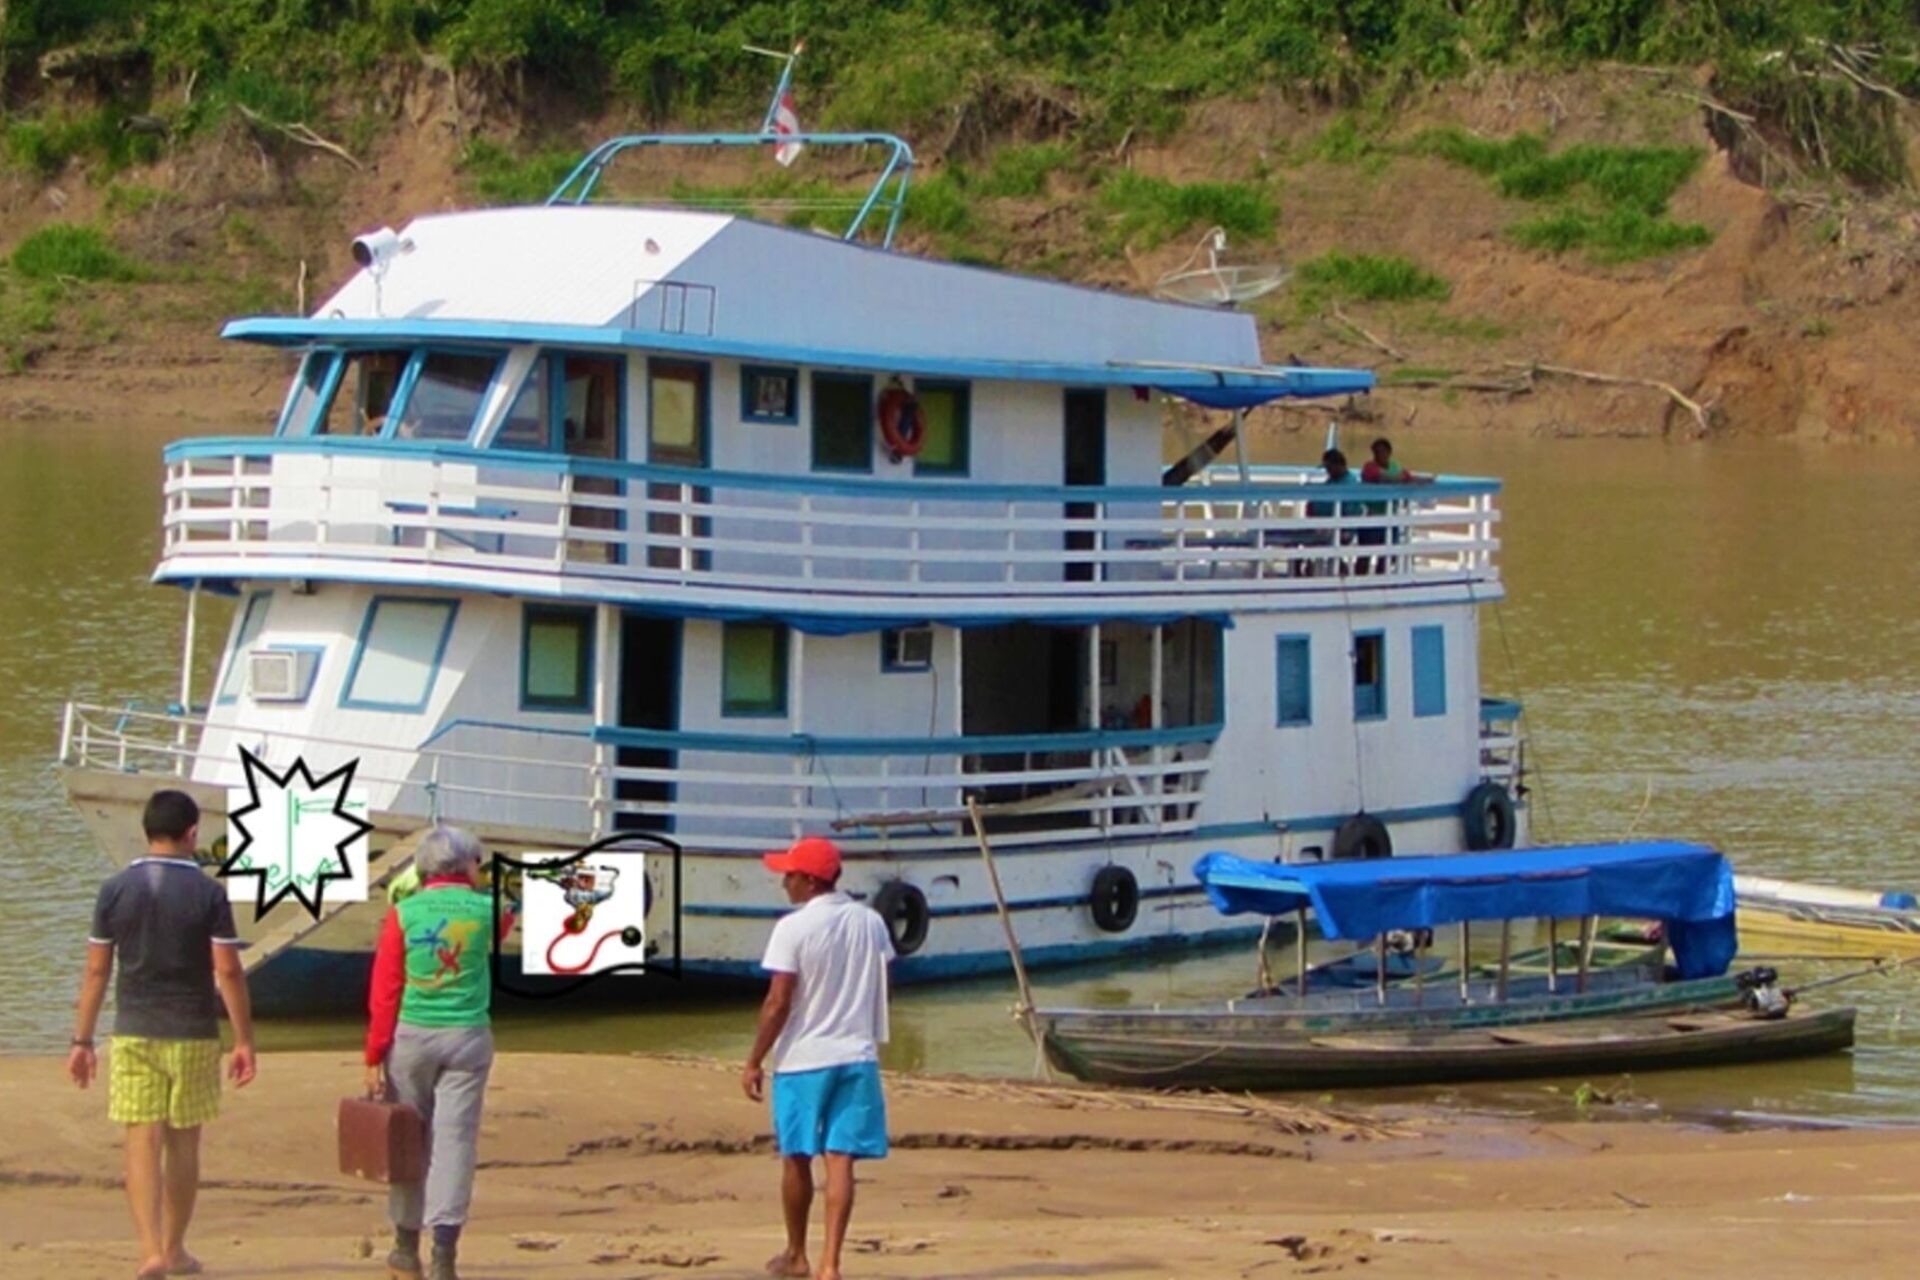 Intelligenza Artificiale: il Barco Hospital è un ricovero clinico galleggiante che si muove lungo il fiume Purus in Amazzonia, gestito dal medico spagnolo Antonia López González